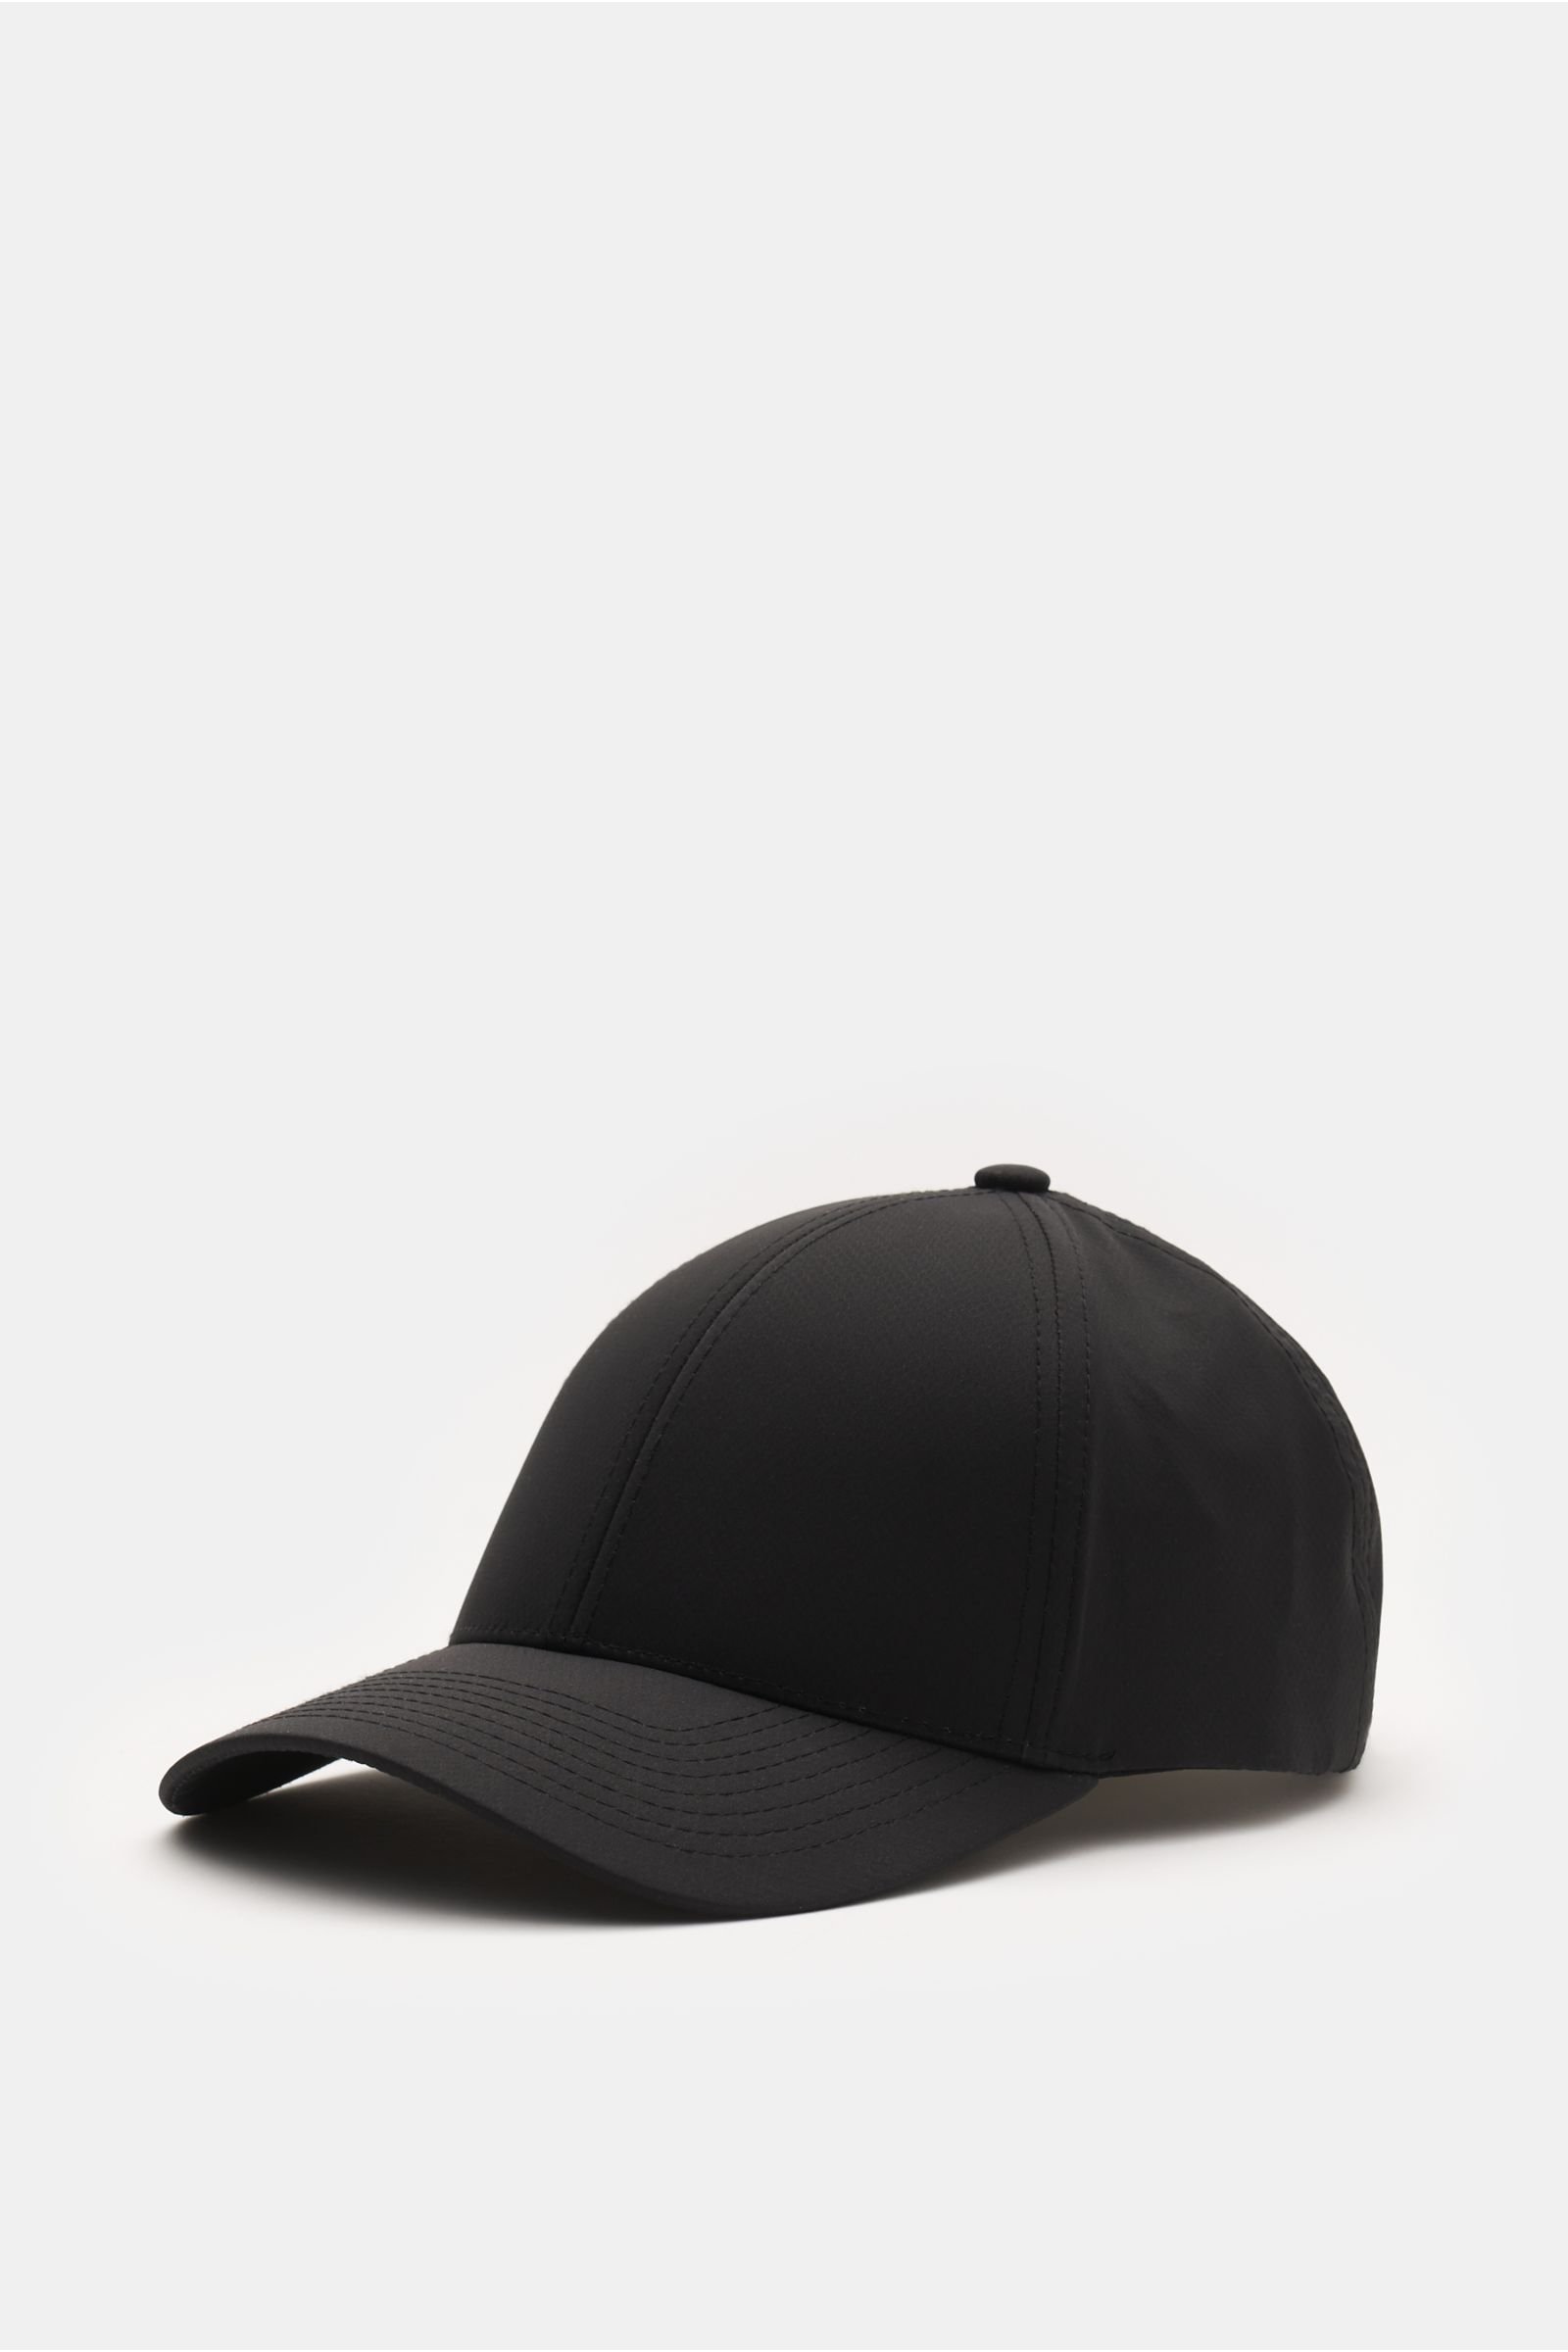 Baseball cap black